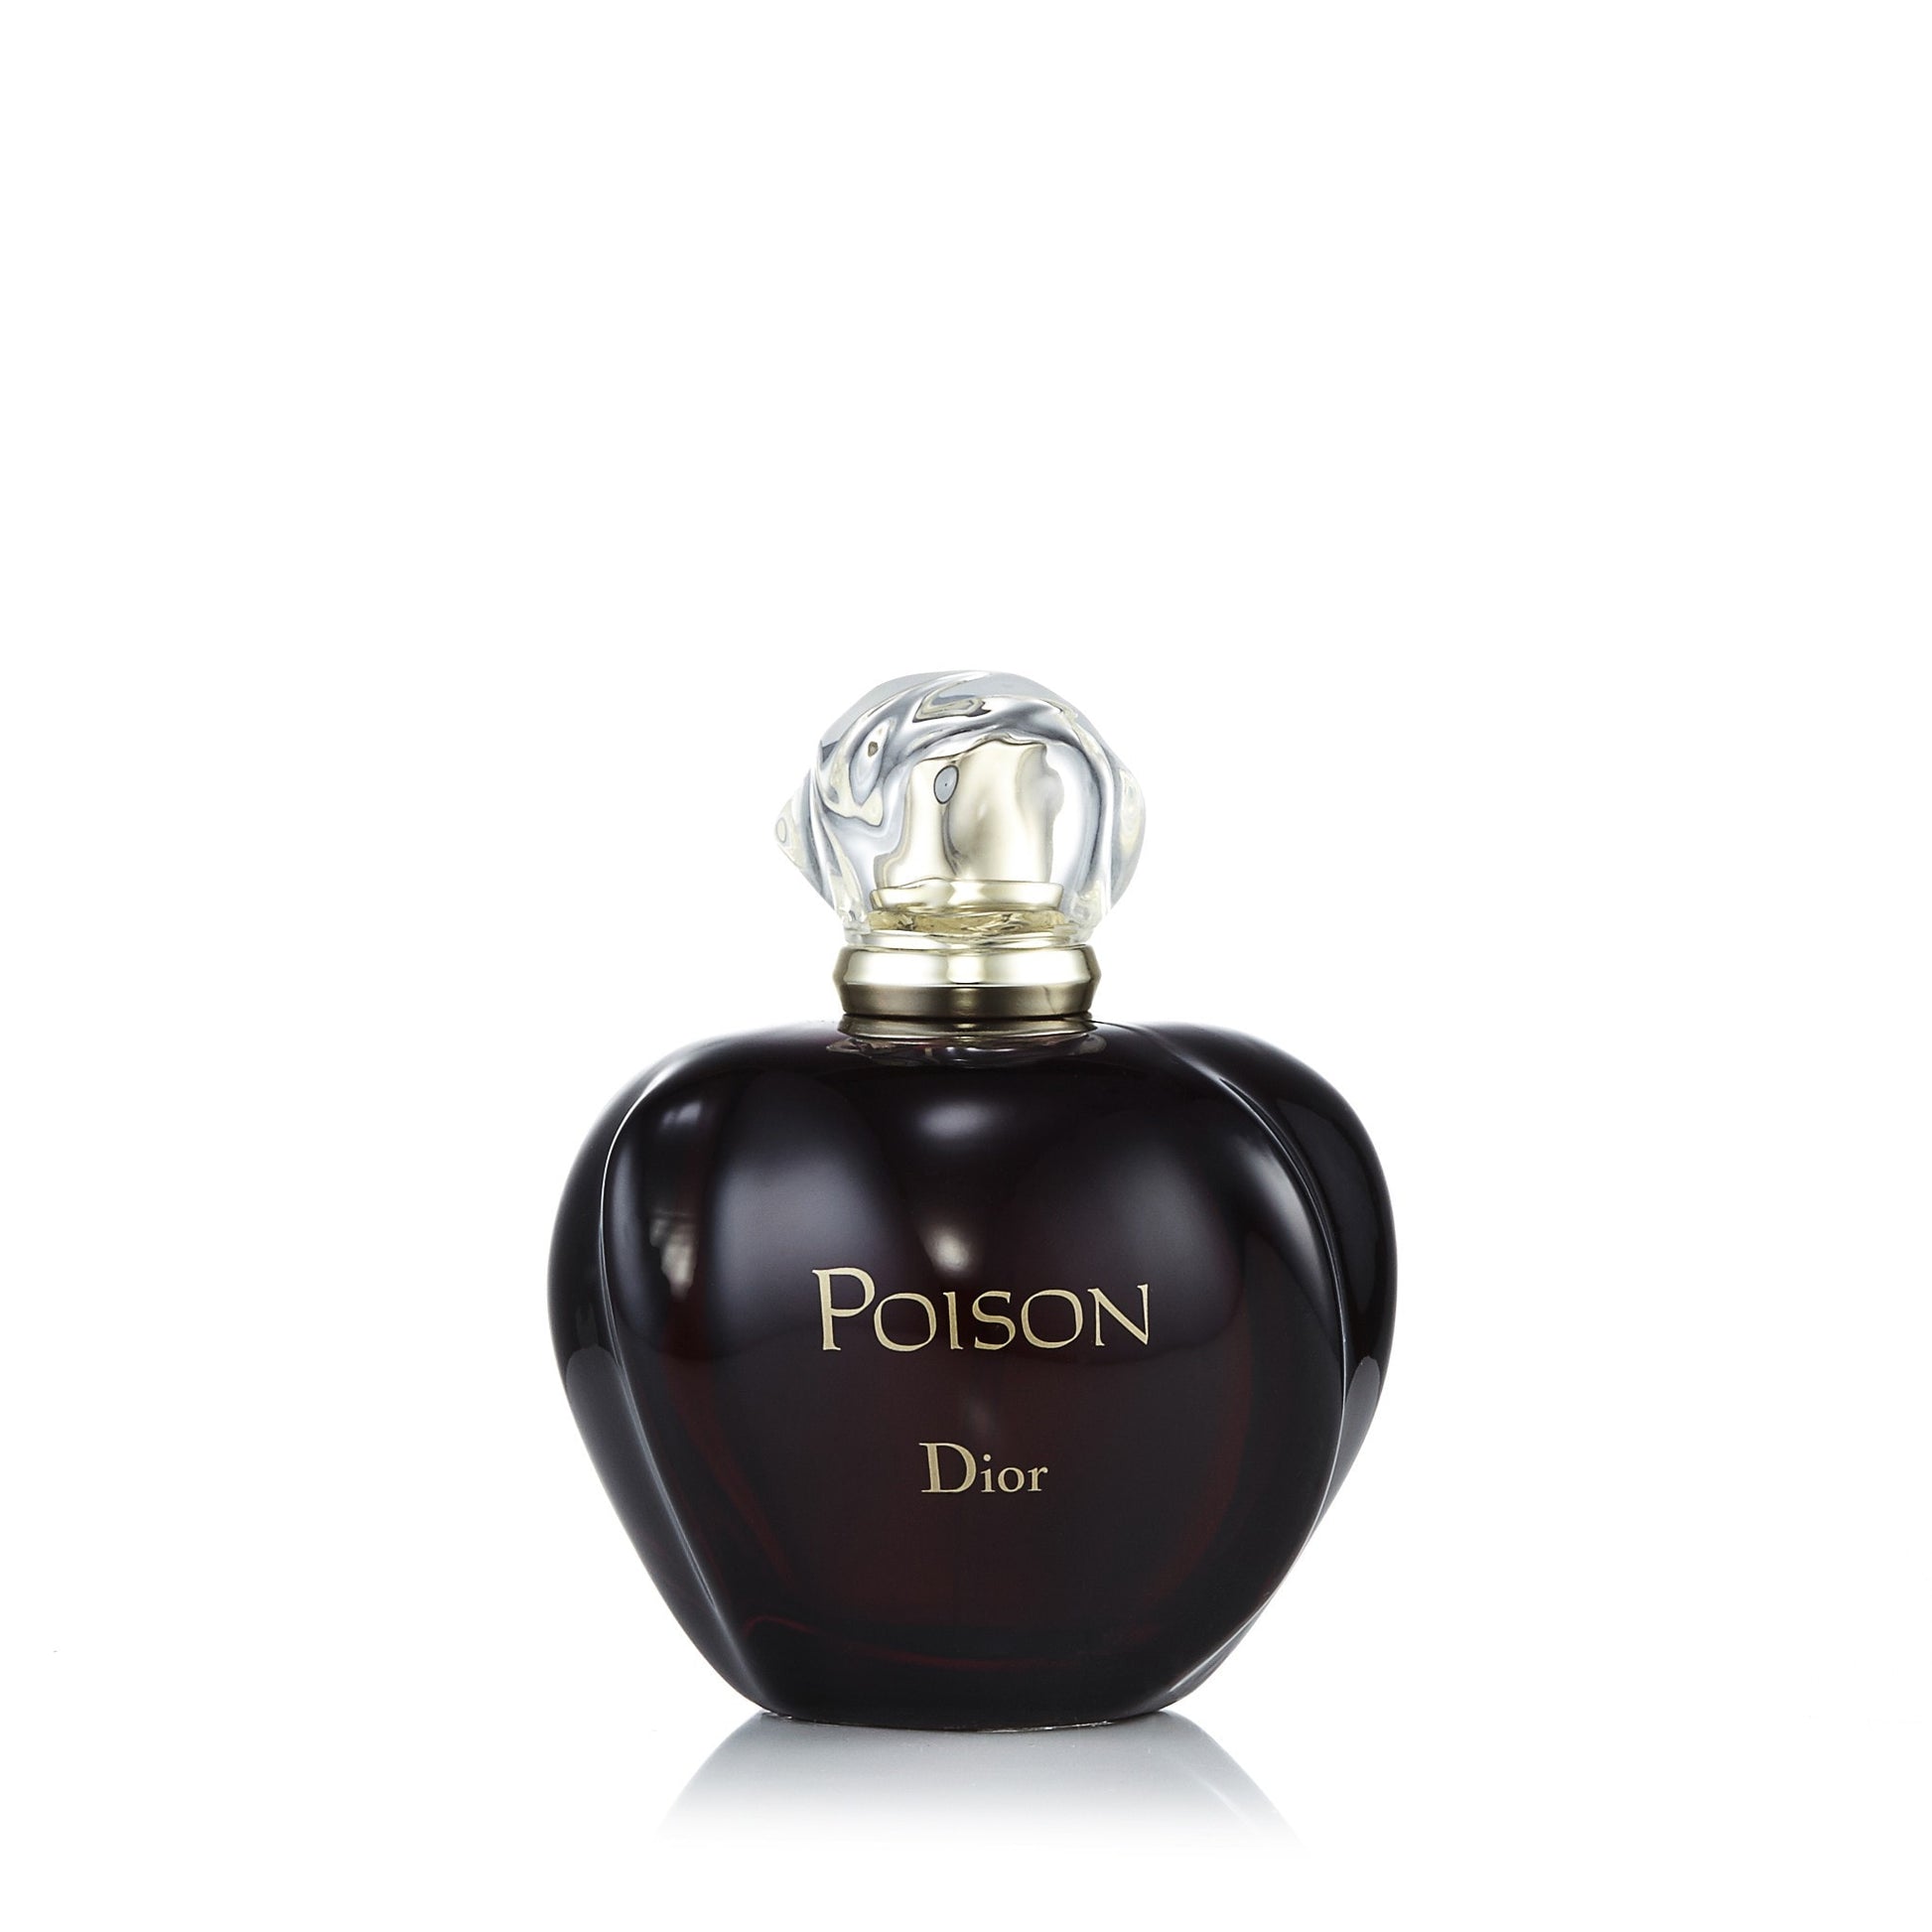 Poison Eau de Toilette Spray for Women by Dior, Product image 5